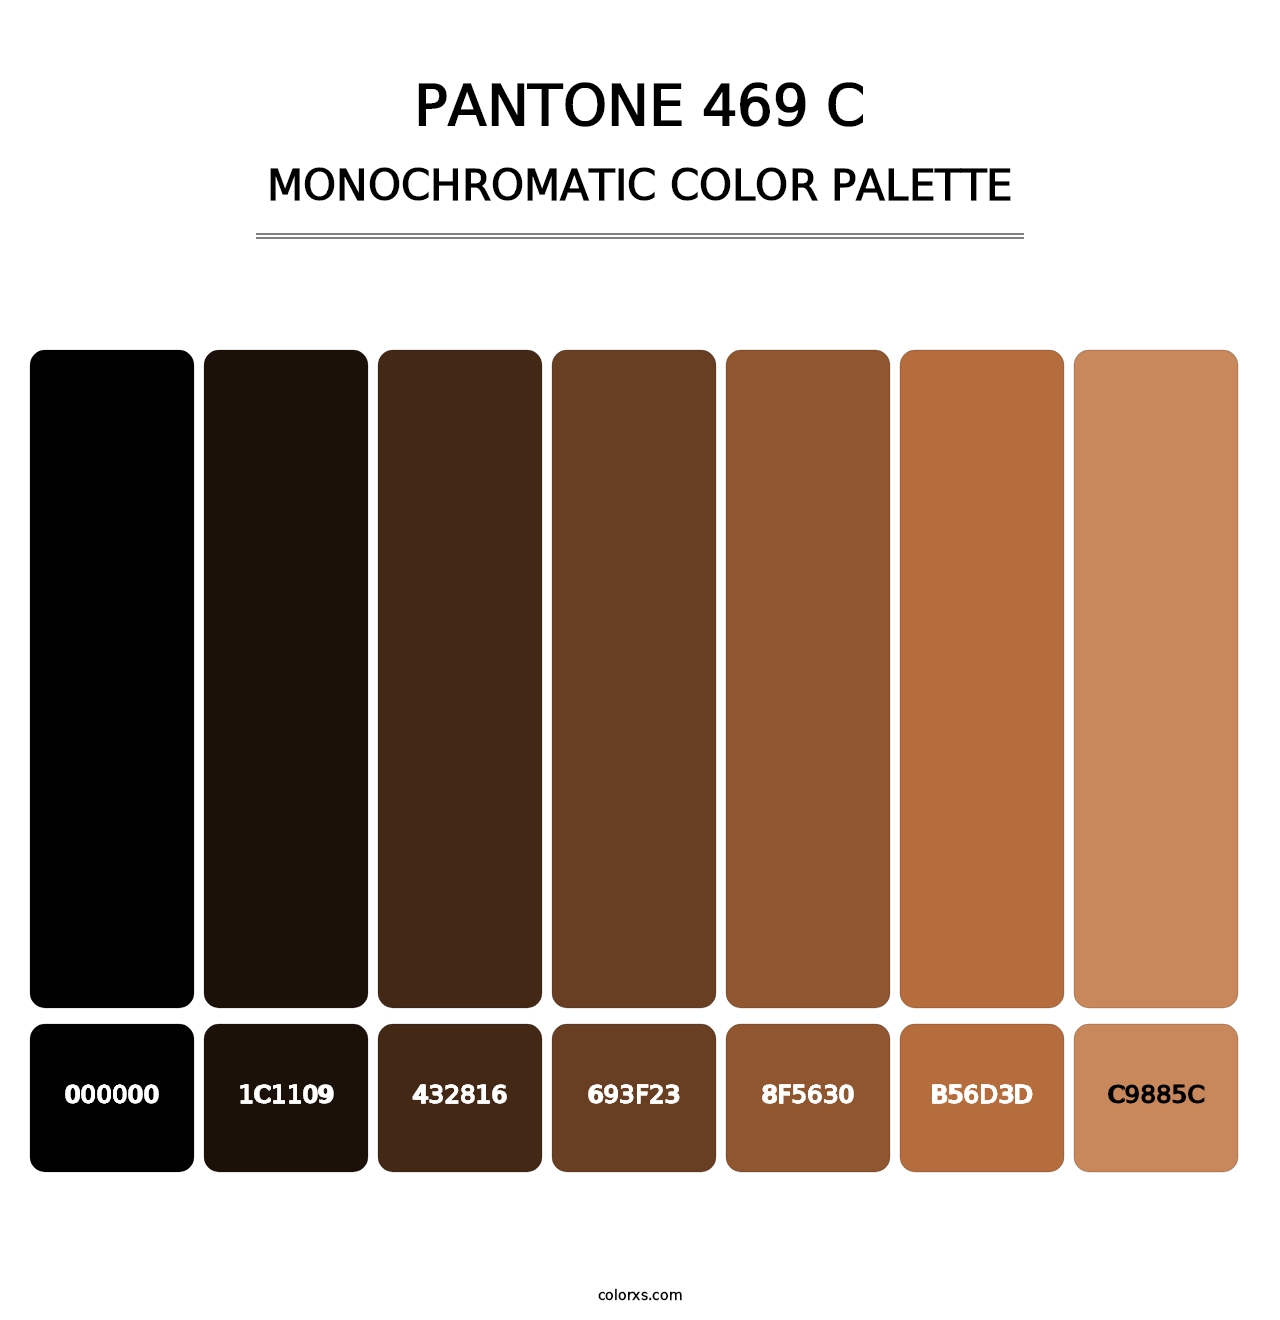 PANTONE 469 C - Monochromatic Color Palette